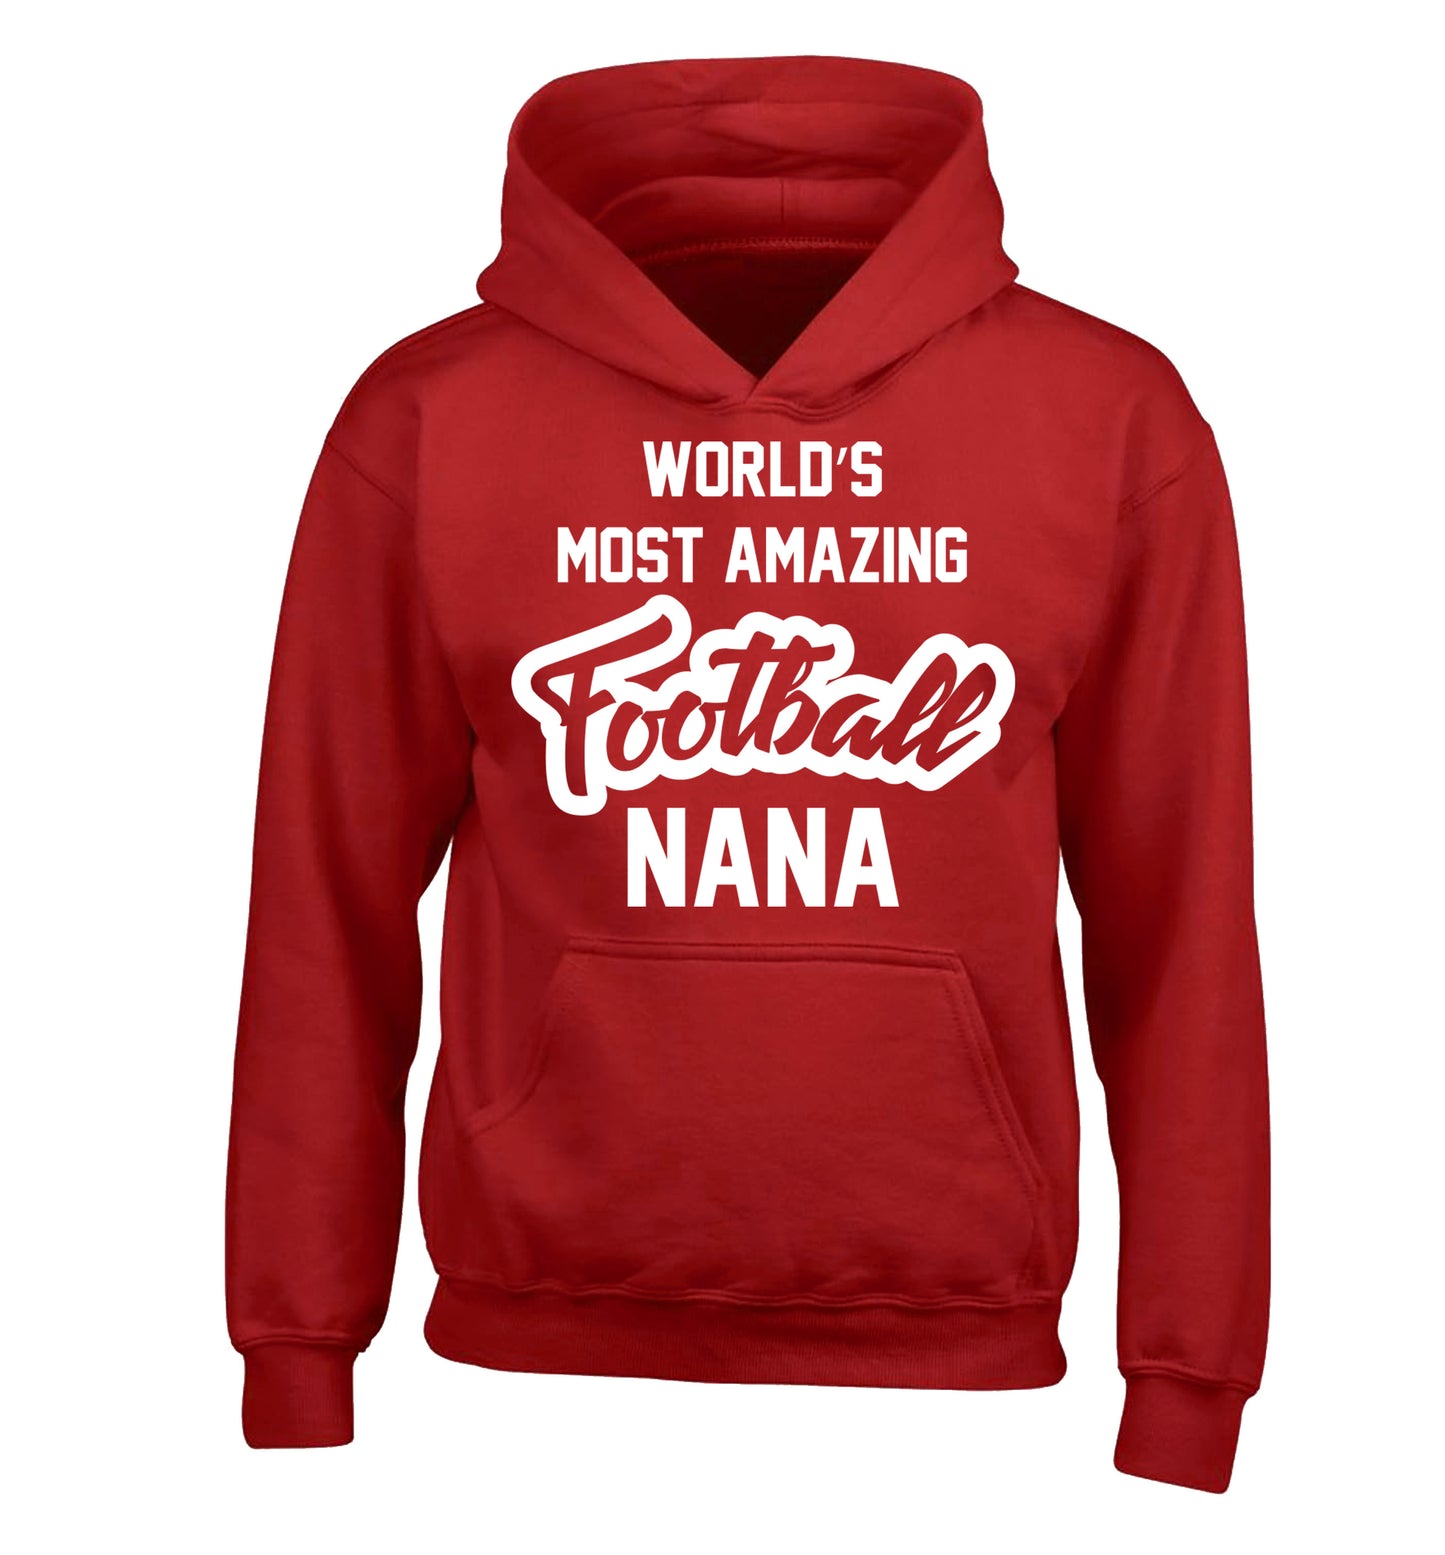 Worlds most amazing football nana children's red hoodie 12-14 Years